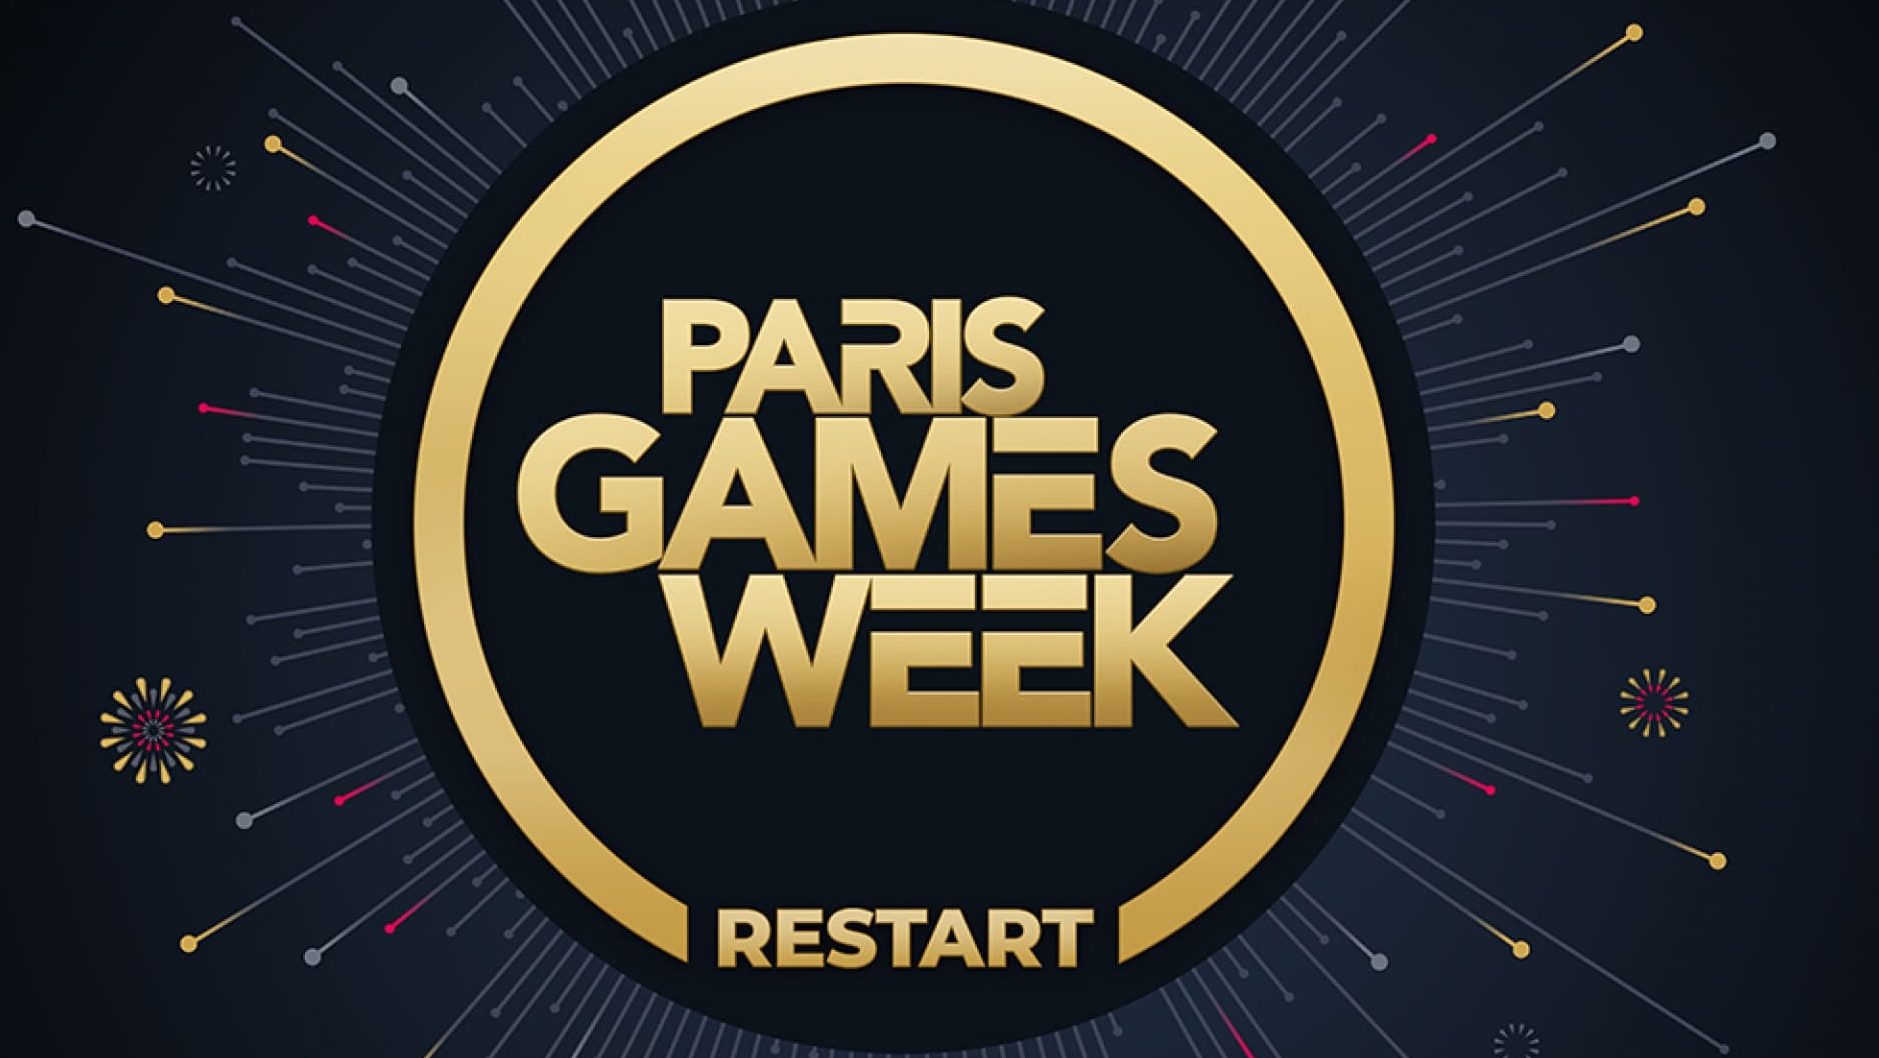 Paris games week 2022 e1666856459344 2